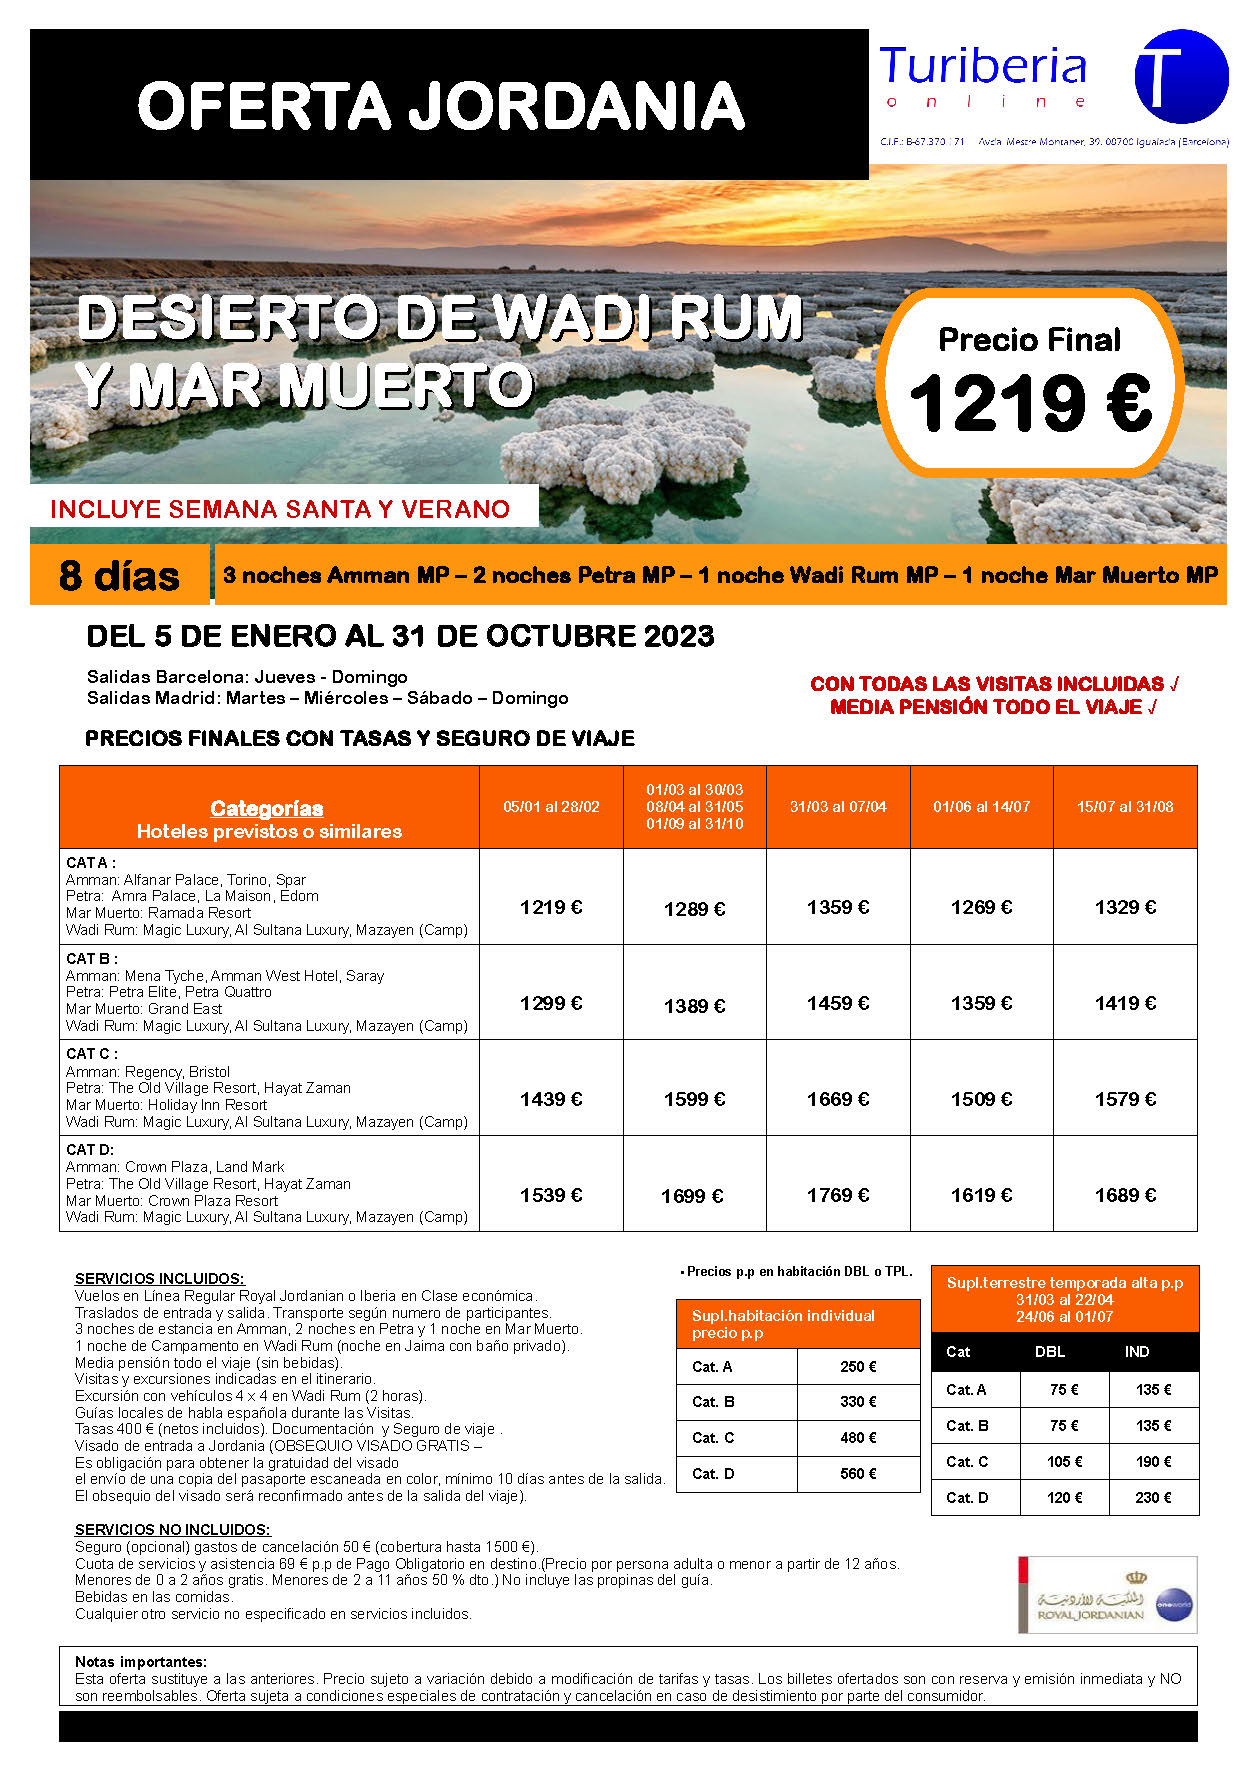 Ofertas Turiberia Jordania 2023 Desierto de Wadi Rum y Mar Muerto 8 dias salida en vuelo directo desde Barcelona y Madrid